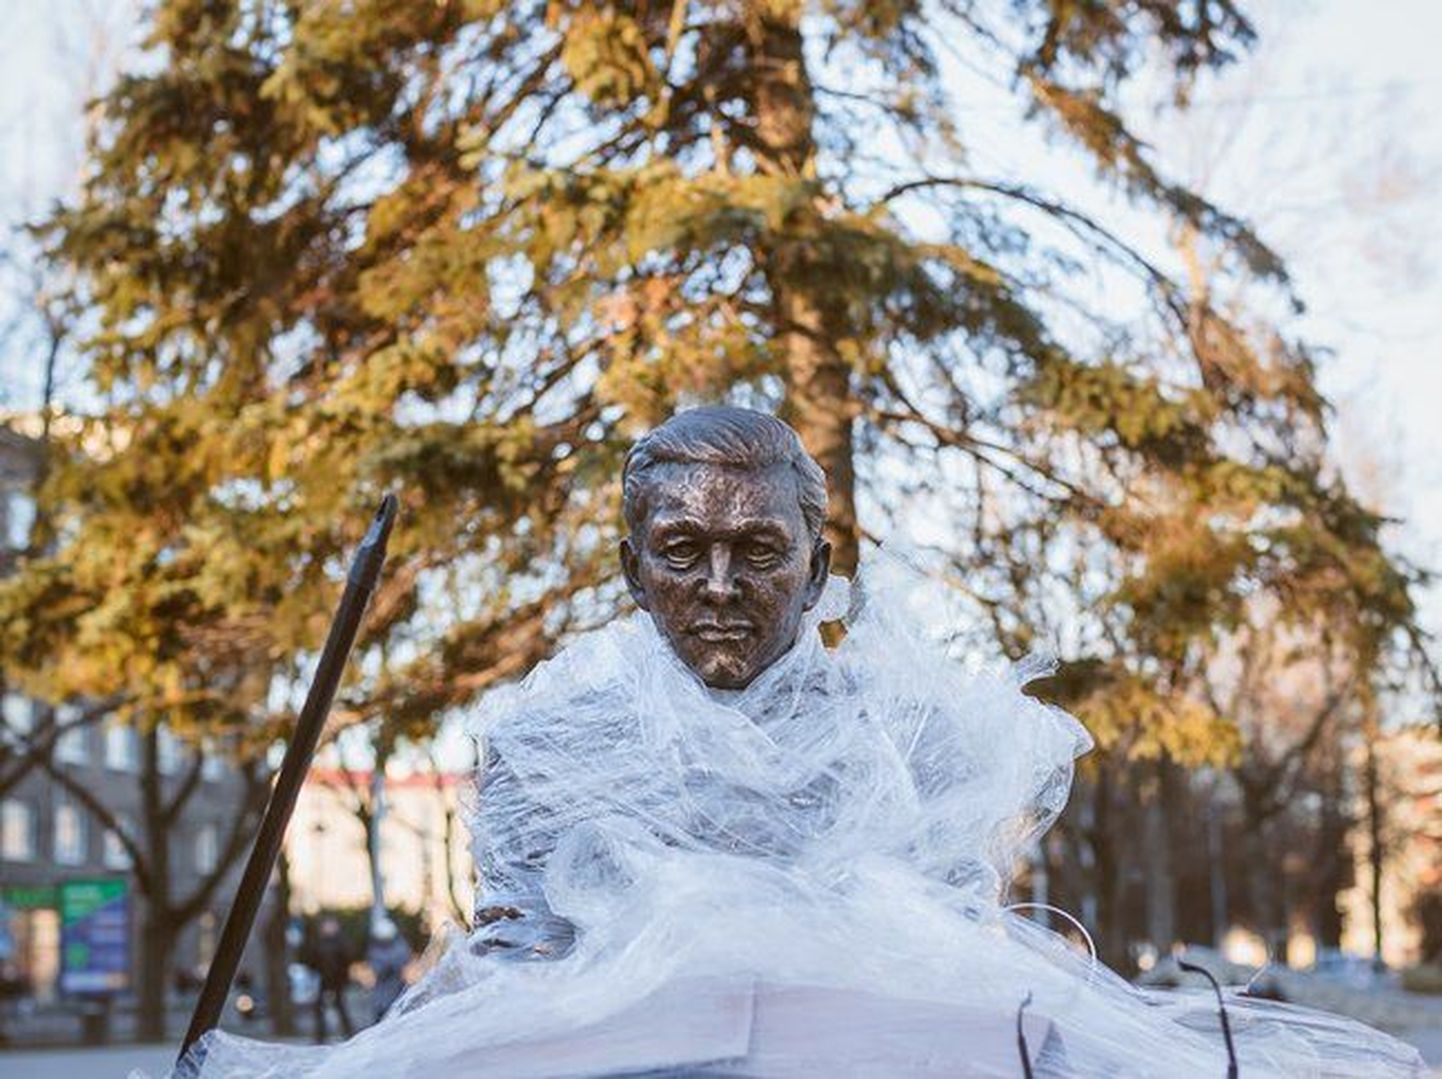 Памятник Паулю Кересу установили возле Петровской площади Нарвы, но пока скрывают от людских глаз. Праздничное открытие состоится 7 января - точно в день столетия знаменитого эстонского шахматиста.